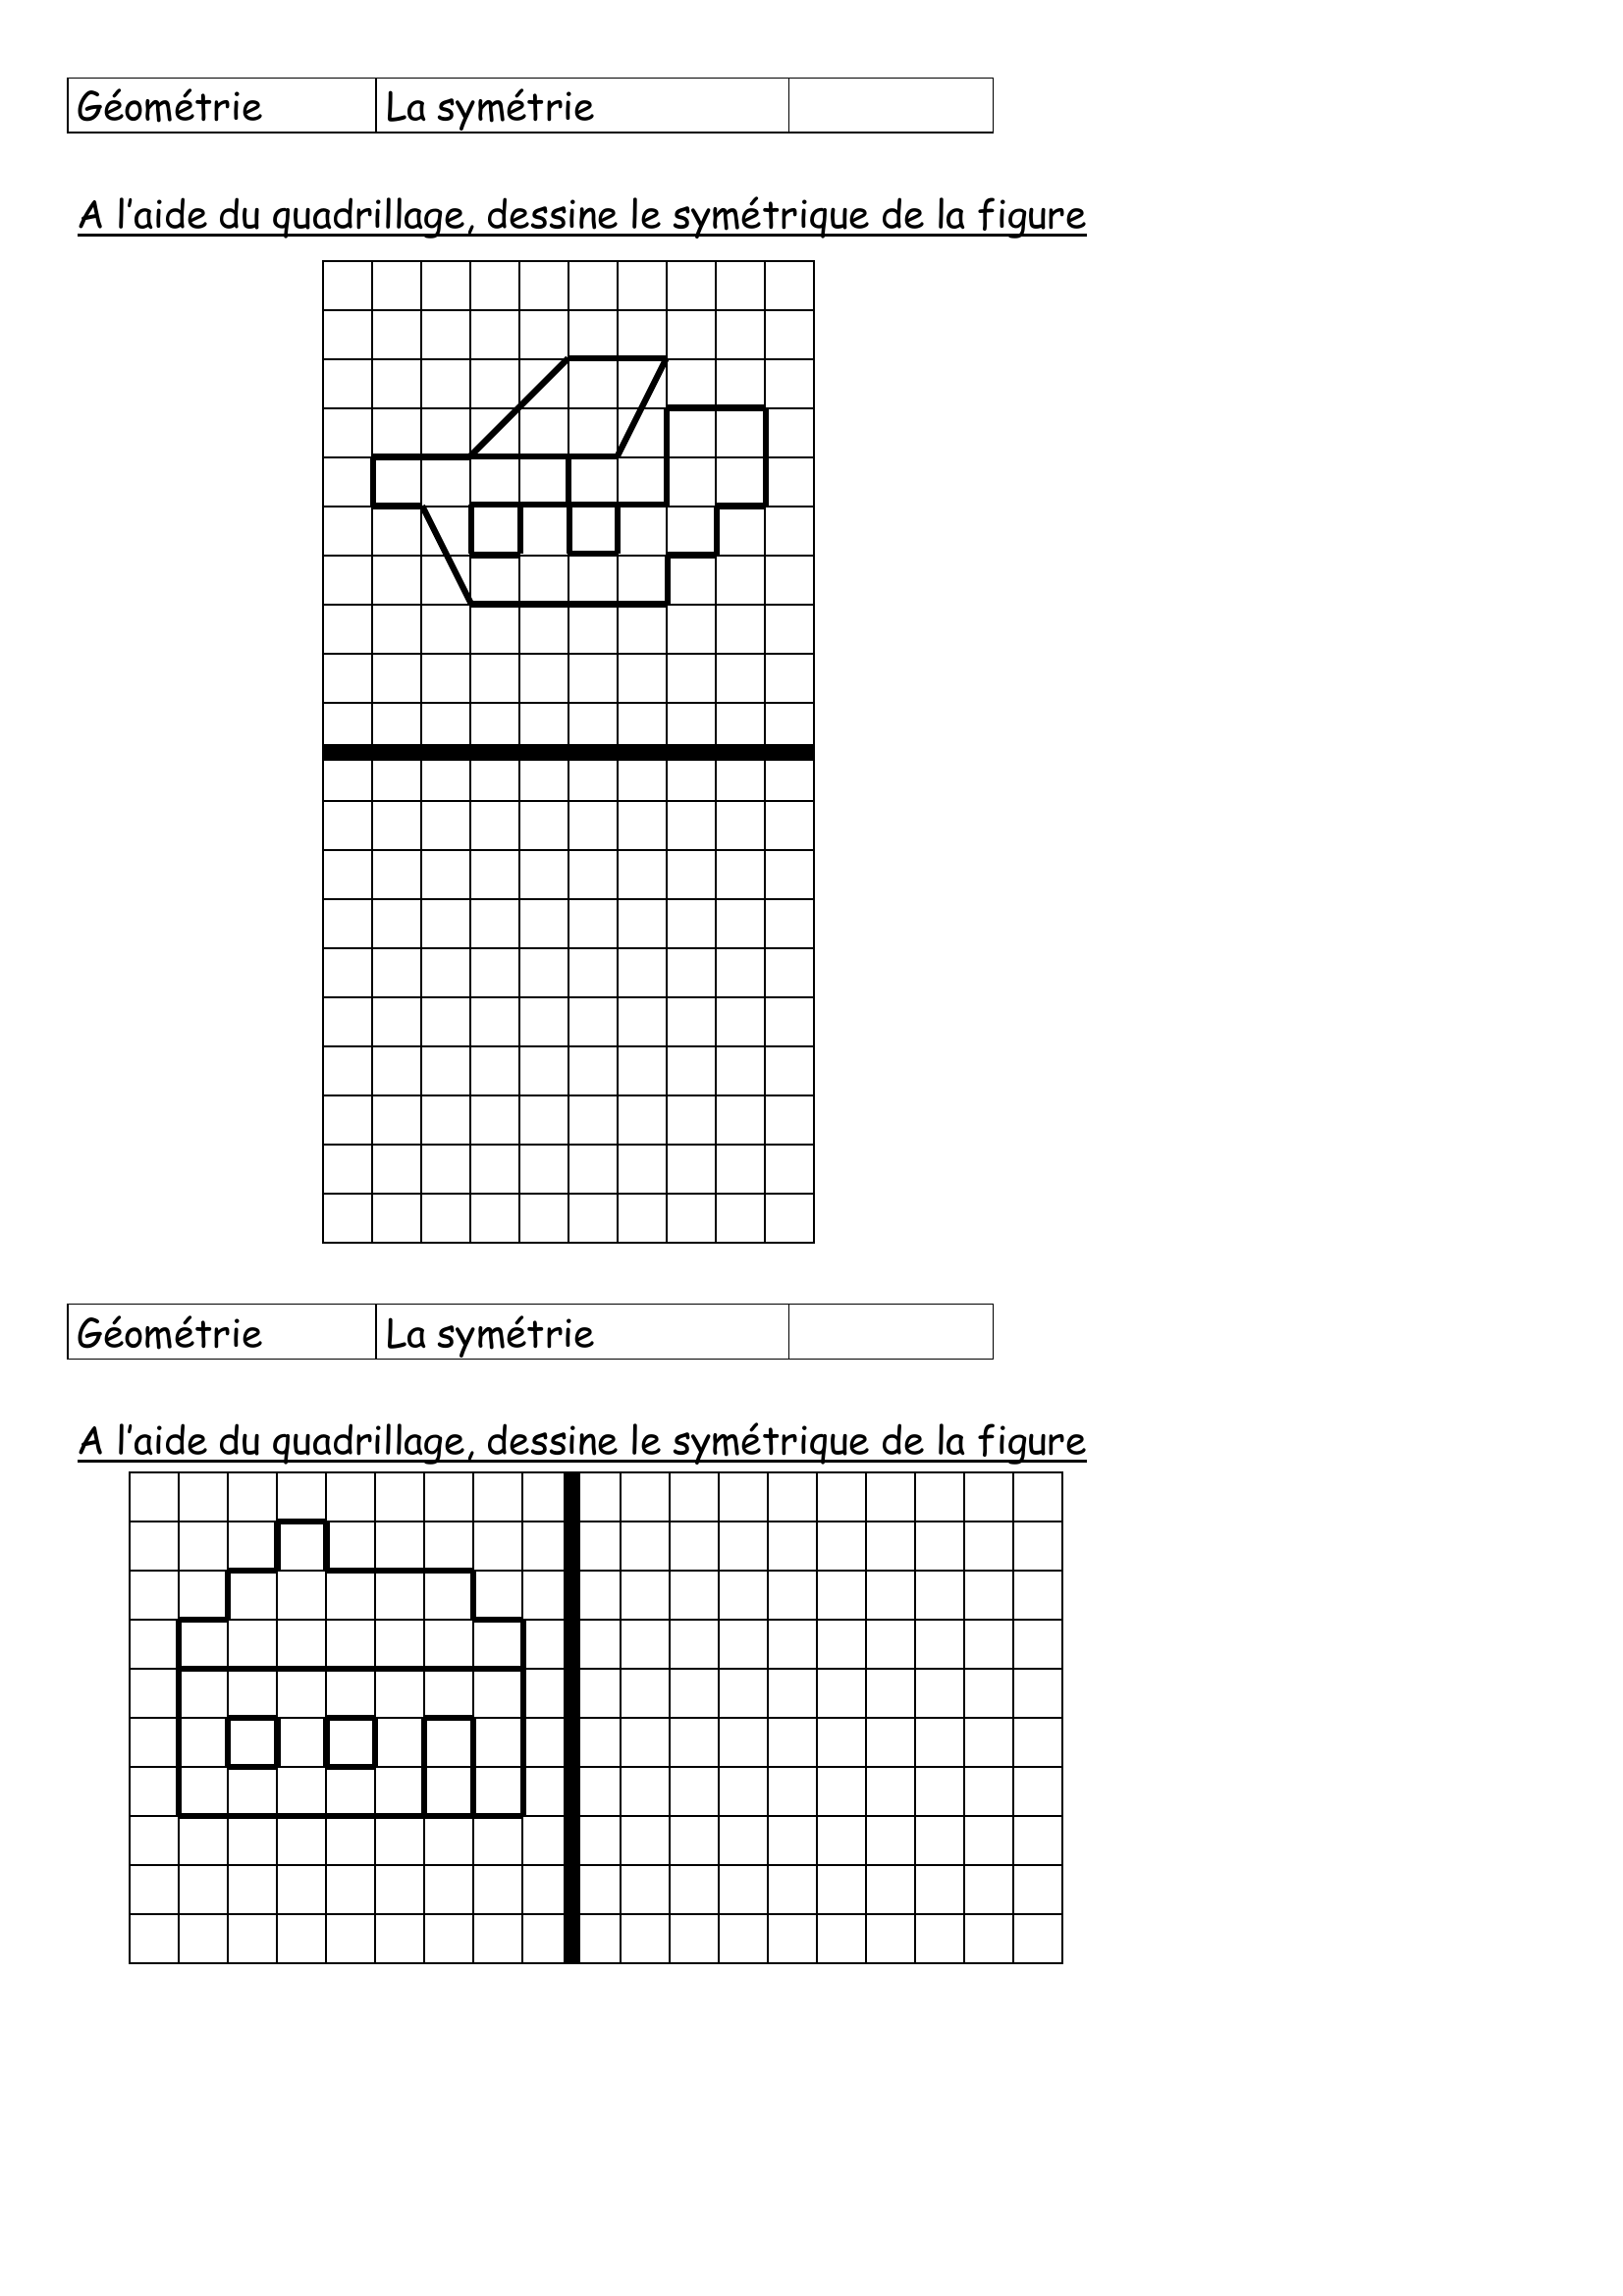 Prévisualisation du document Géométrie

La symétrie

A l'aide du quadrillage, dessine
le symétrique de la figure

Géométrie

La